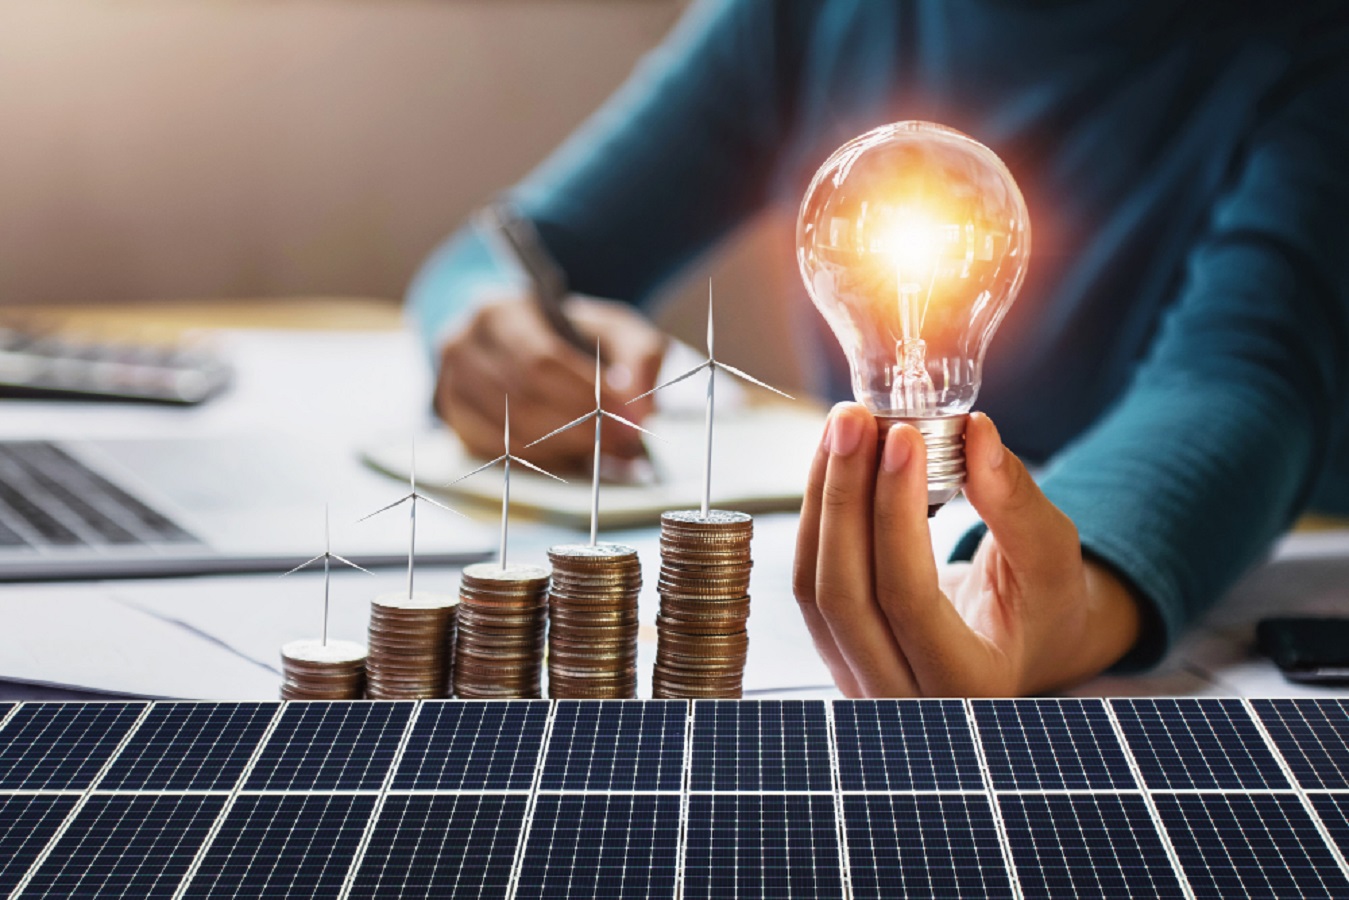 ¿Cómo Ahorrar Electricidad? 5 Consejos para Ahorrar Energía que Debes Conocer